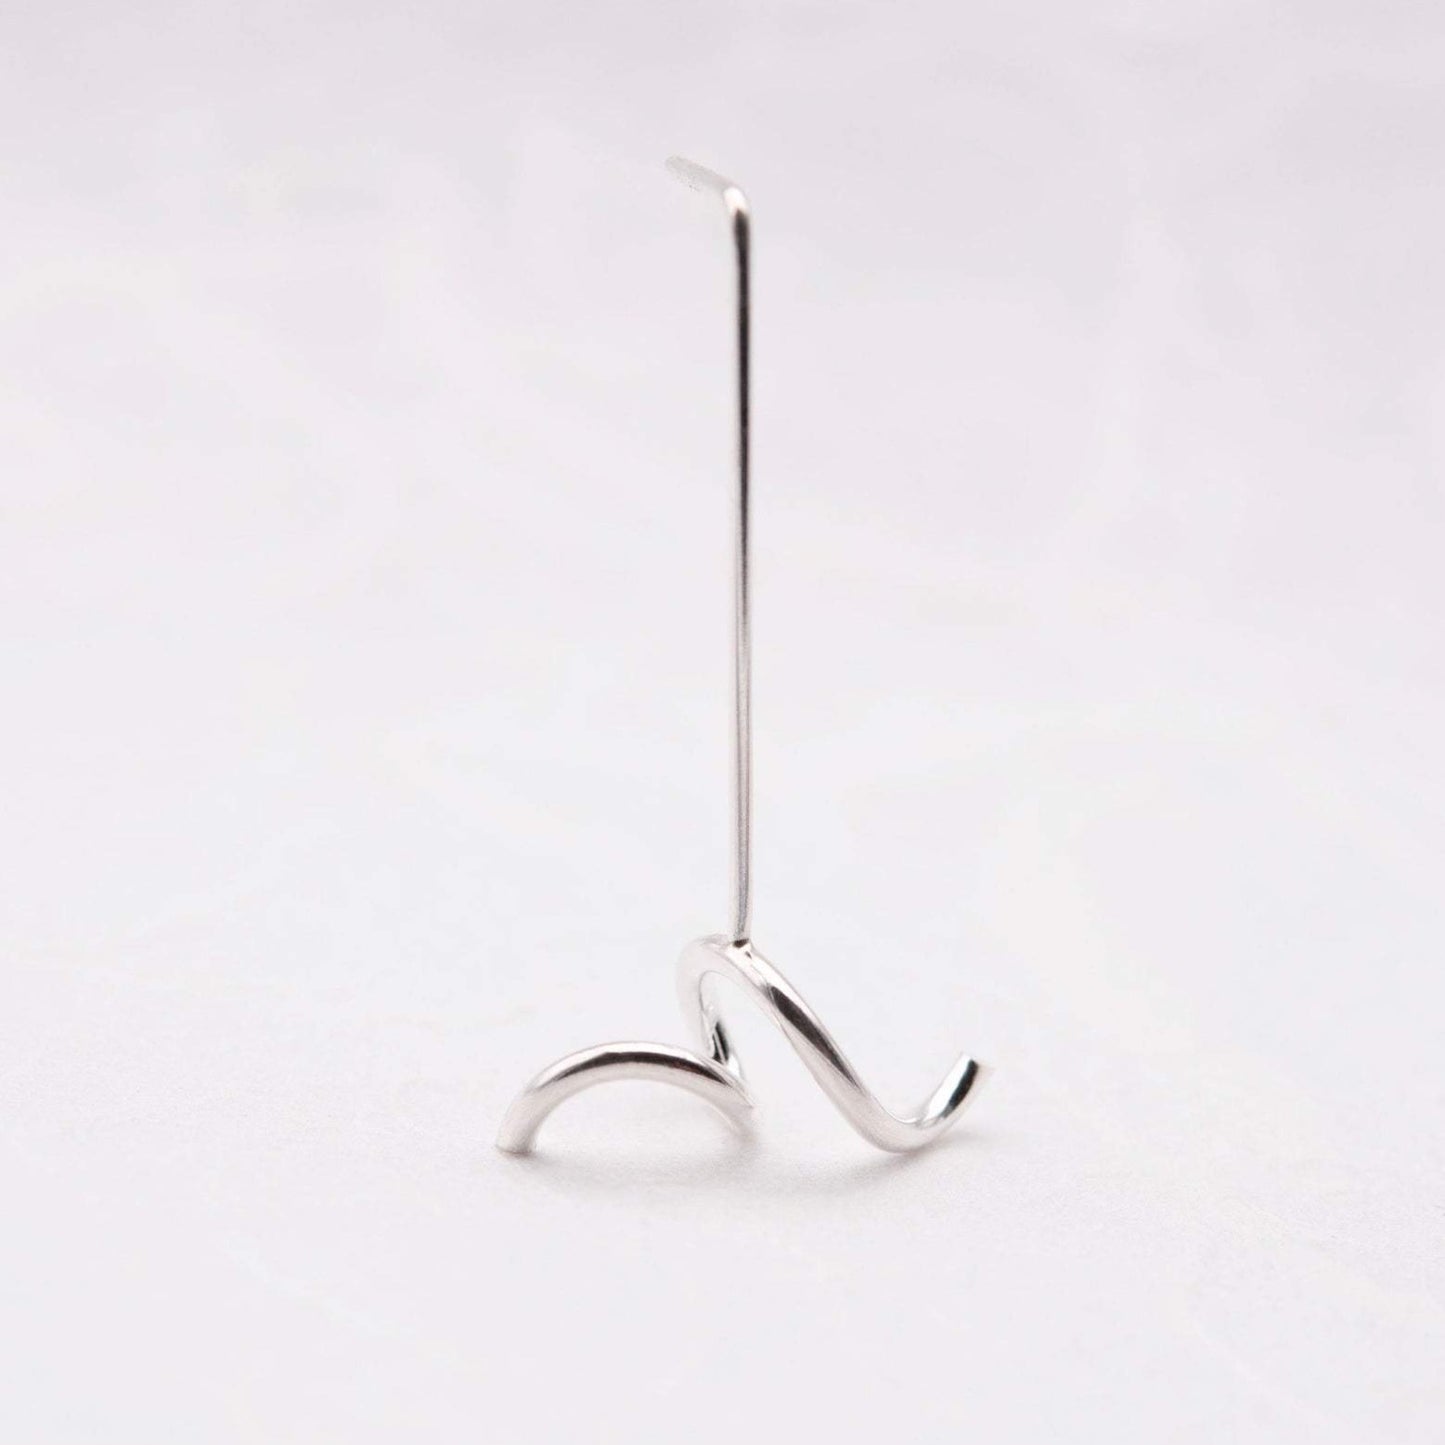 Single earring in Silver by AgJc